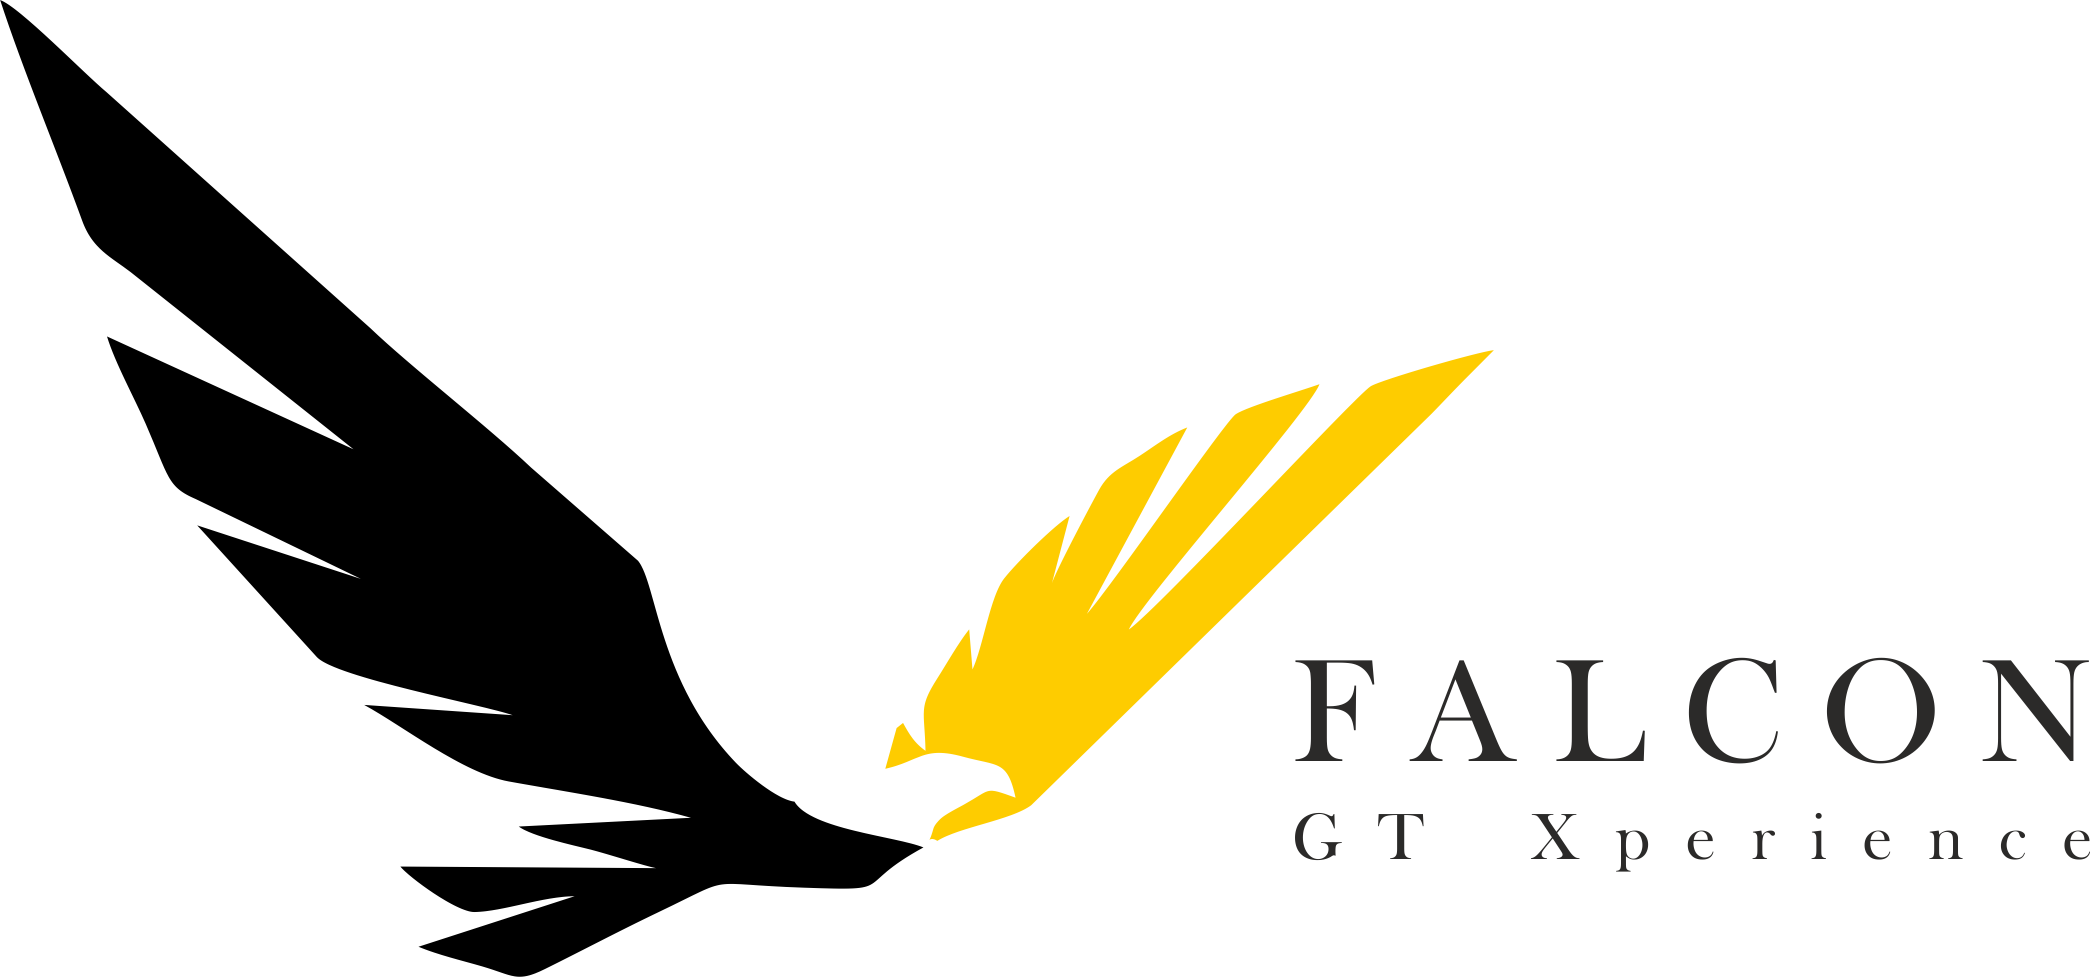 Falcon GT Xperience logo